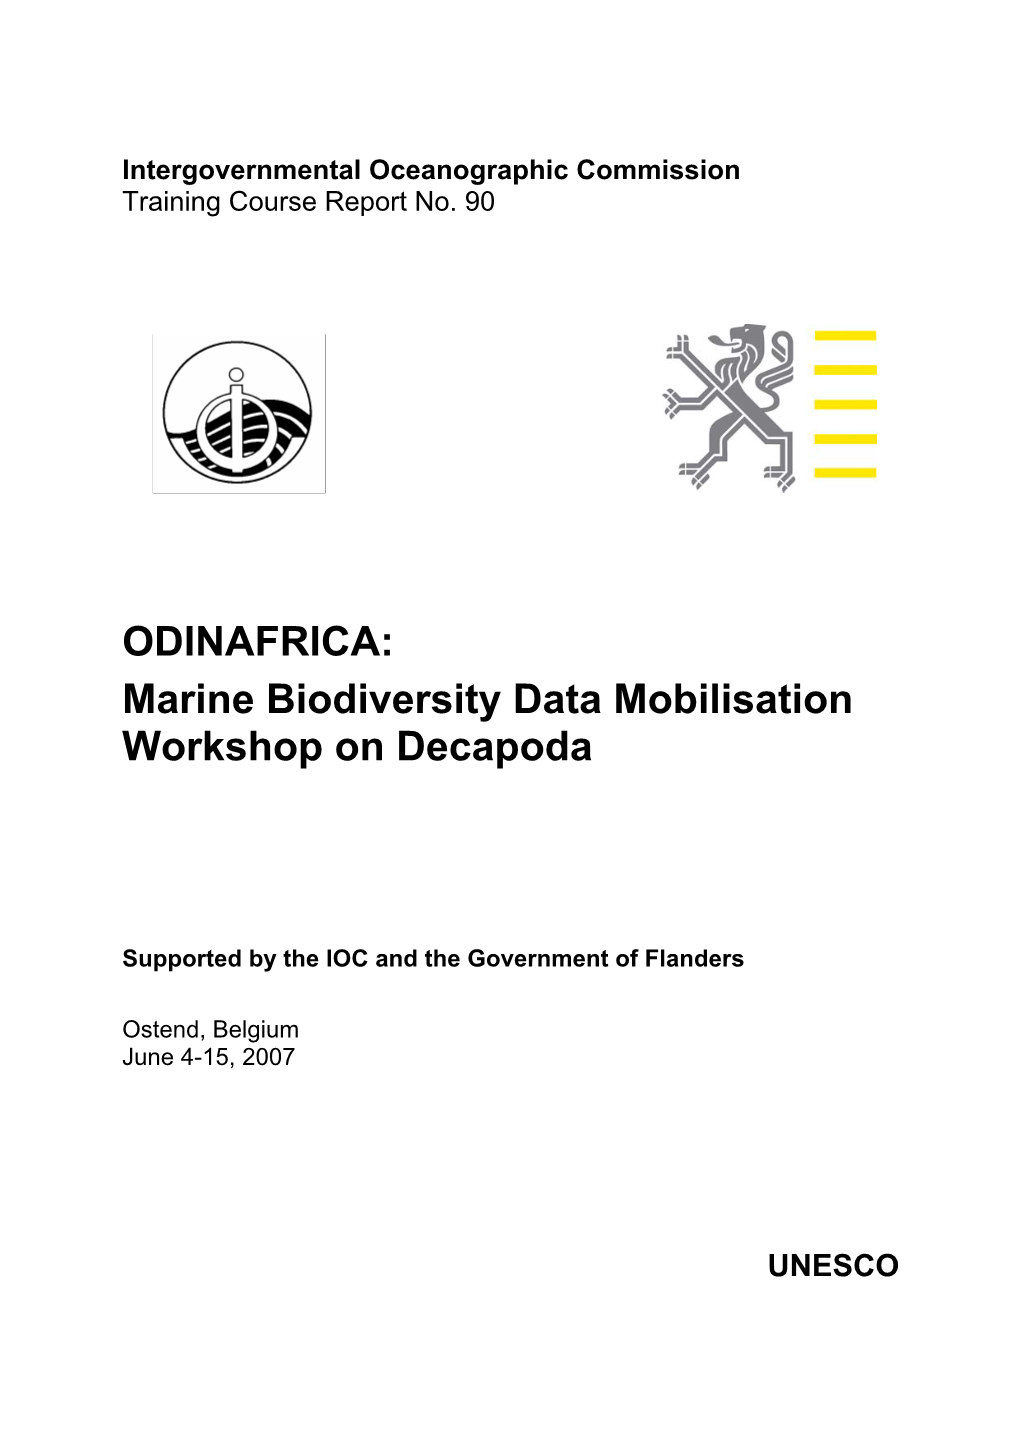 ODINAFRICA: Marine Biodiversity Data Mobilisation Workshop on Decapoda